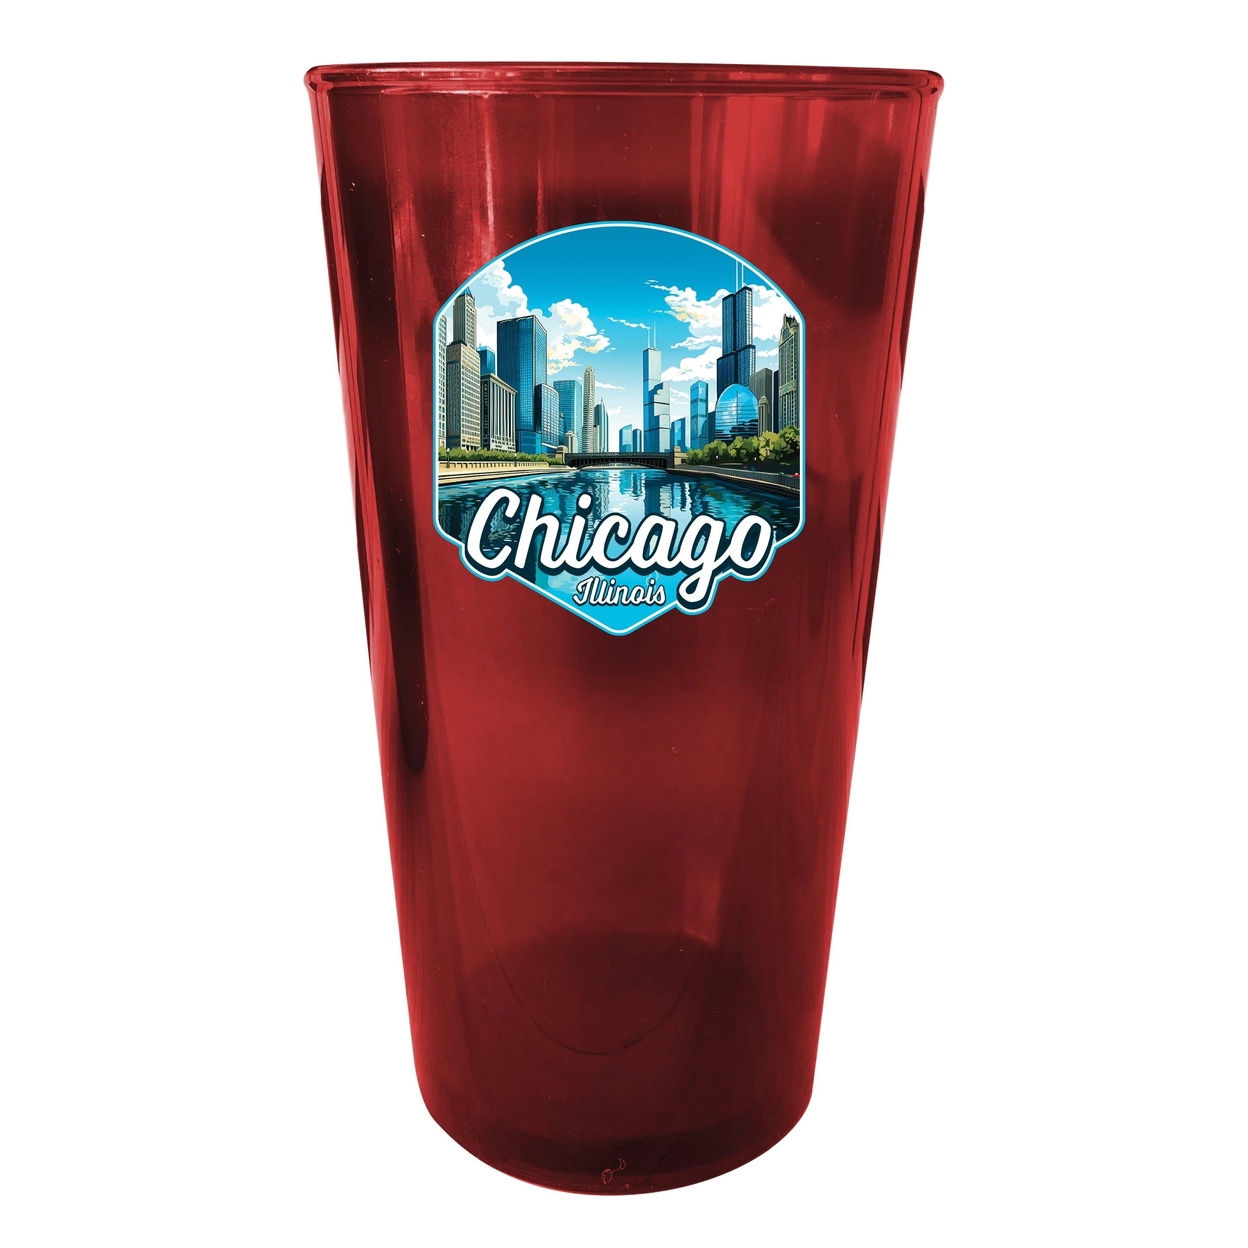 Chicago Illinois A Souvenir Plastic 16 Oz Pint - Red,,2-Pack